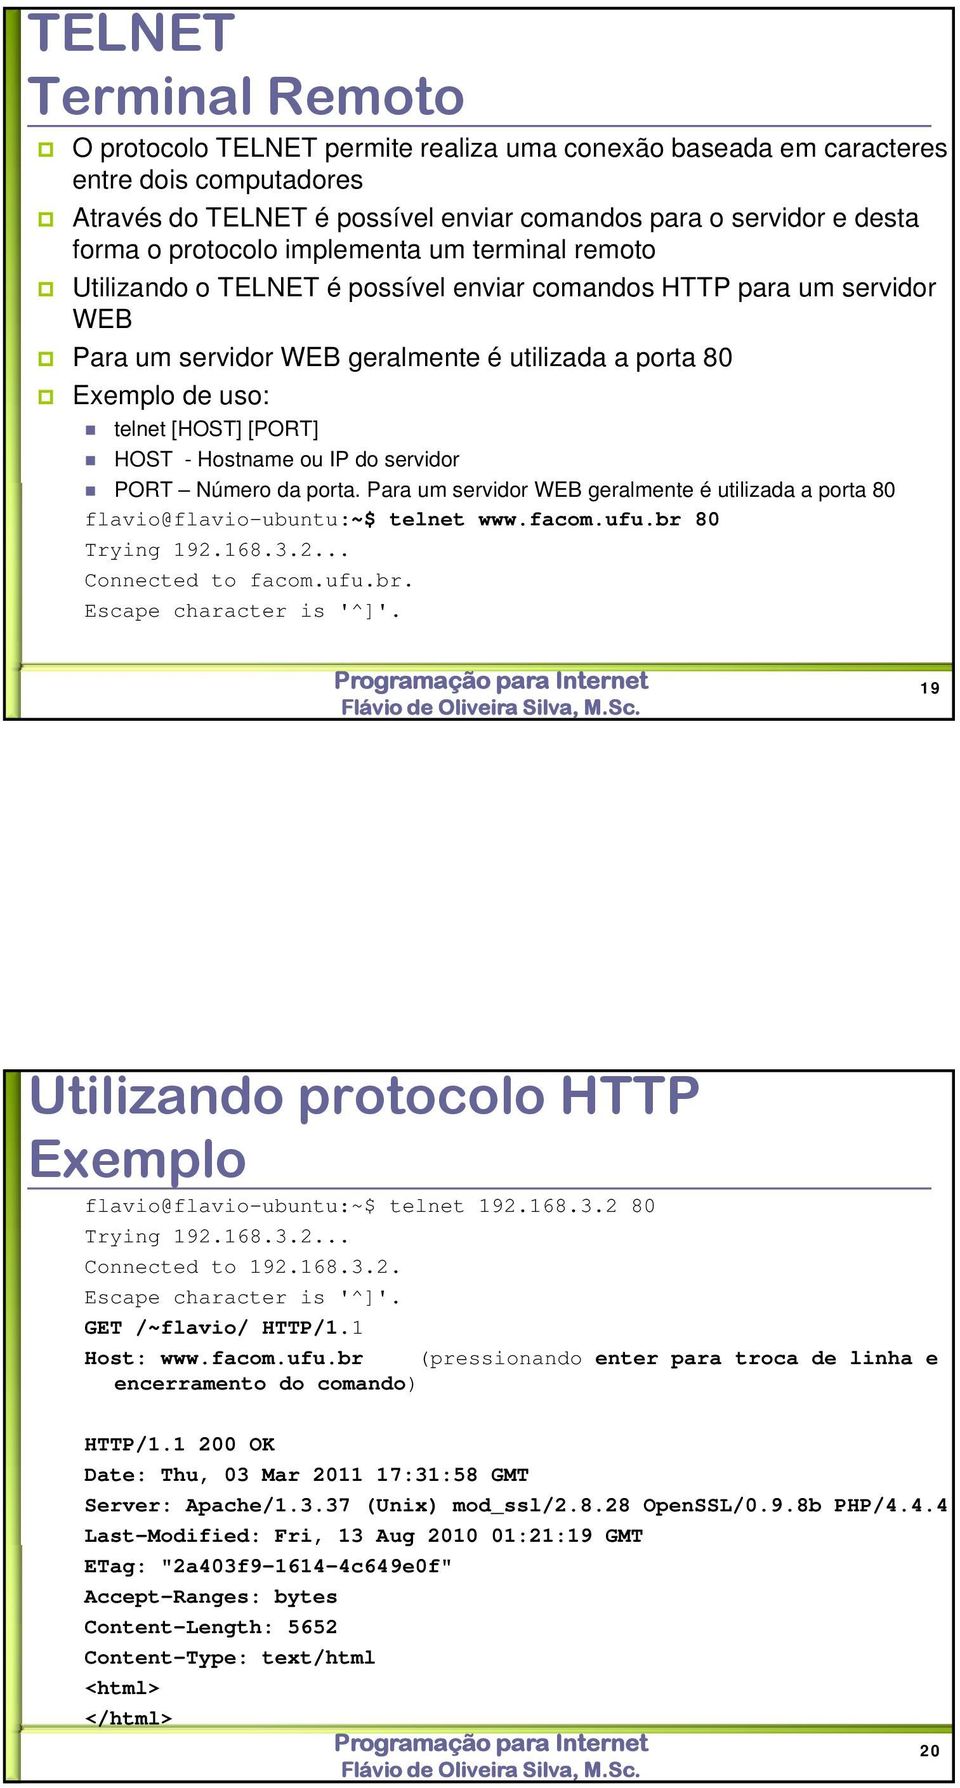 [PORT] HOST - Hostname ou IP do servidor PORT Número da porta. Para um servidor WEB geralmente é utilizada a porta 80 flavio@flavio-ubuntu:~$ telnet www.facom.ufu.br 80 Trying 192.168.3.2... Connected to facom.